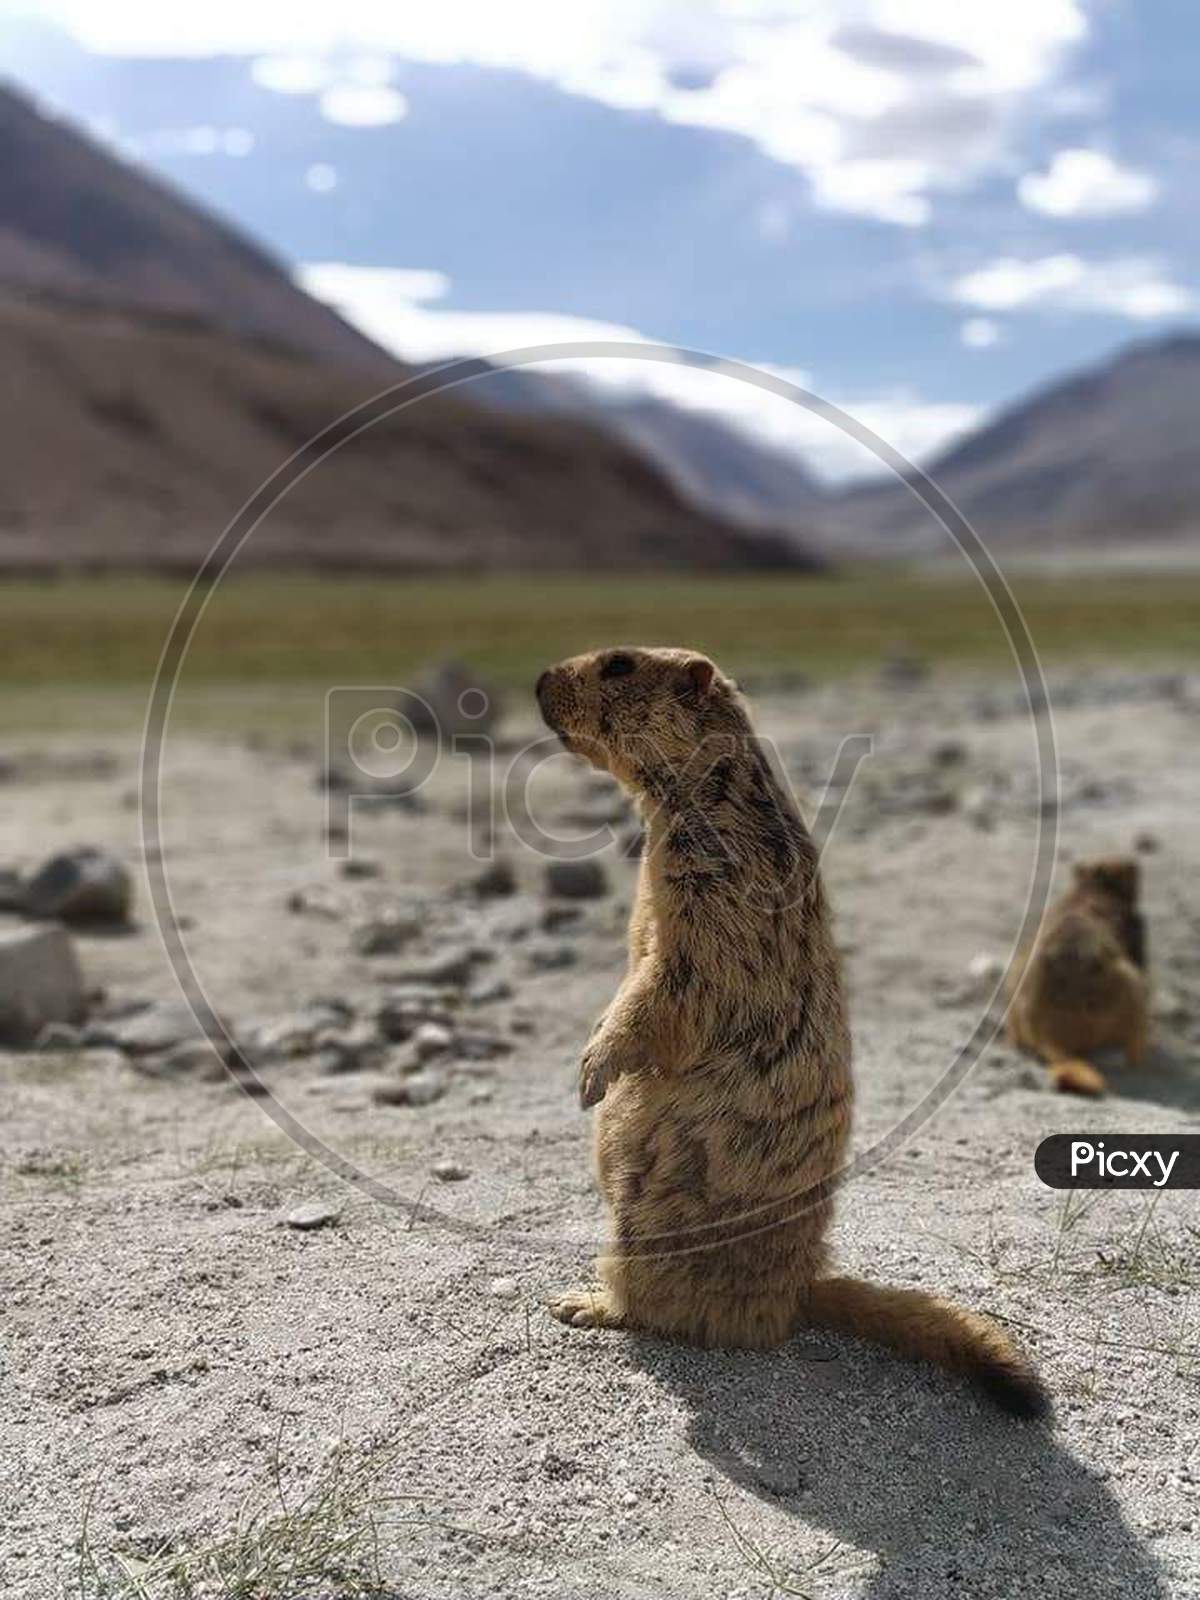 Himalayan Marmot